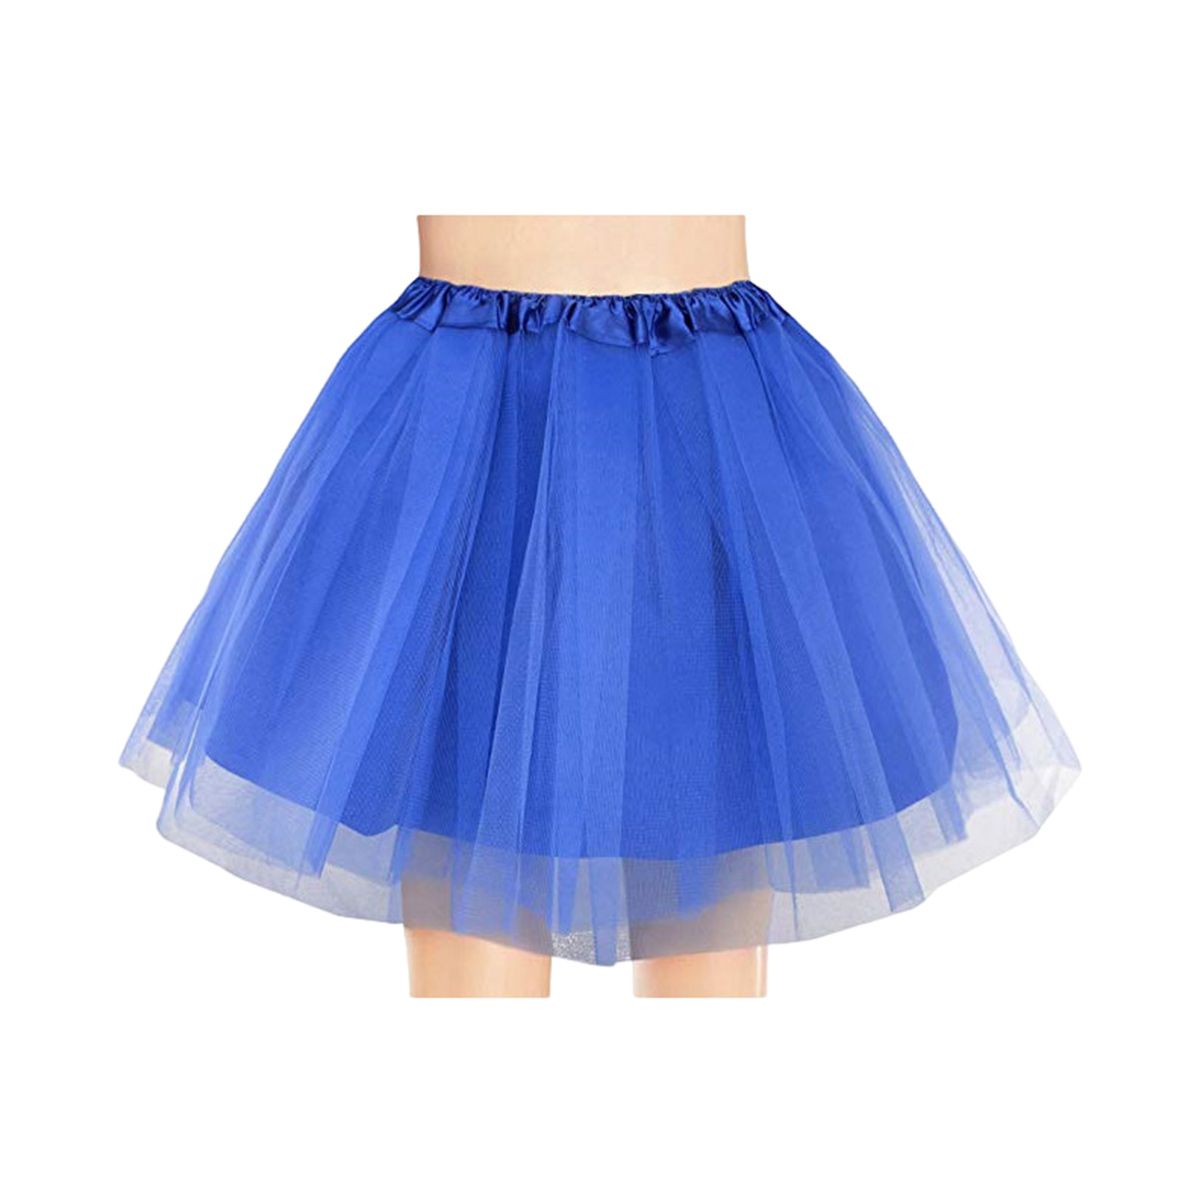 Women's Tutu Skirt Adult Classic Elastic Mini Tulle Ballet Skirt for ...